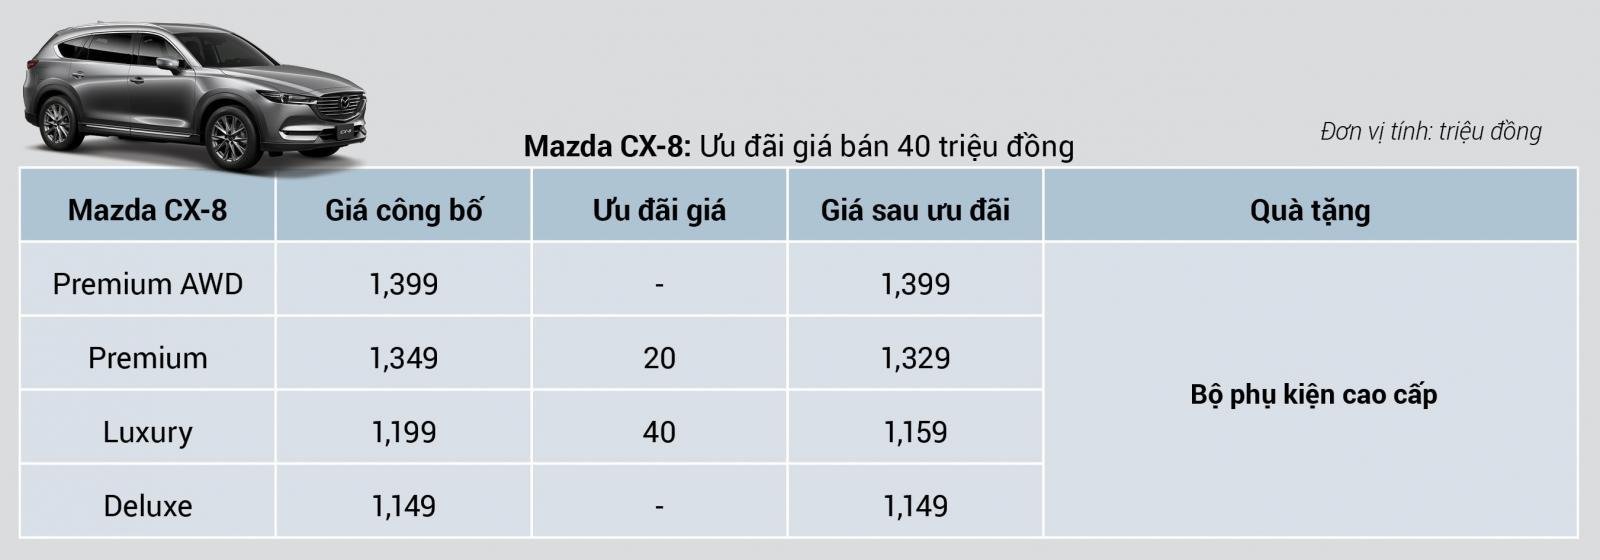 Thaco giảm giá Mazda CX-8 đến 40 triệu kèm quà tặng cho khách mua xe cuối tháng 10/2019 2a